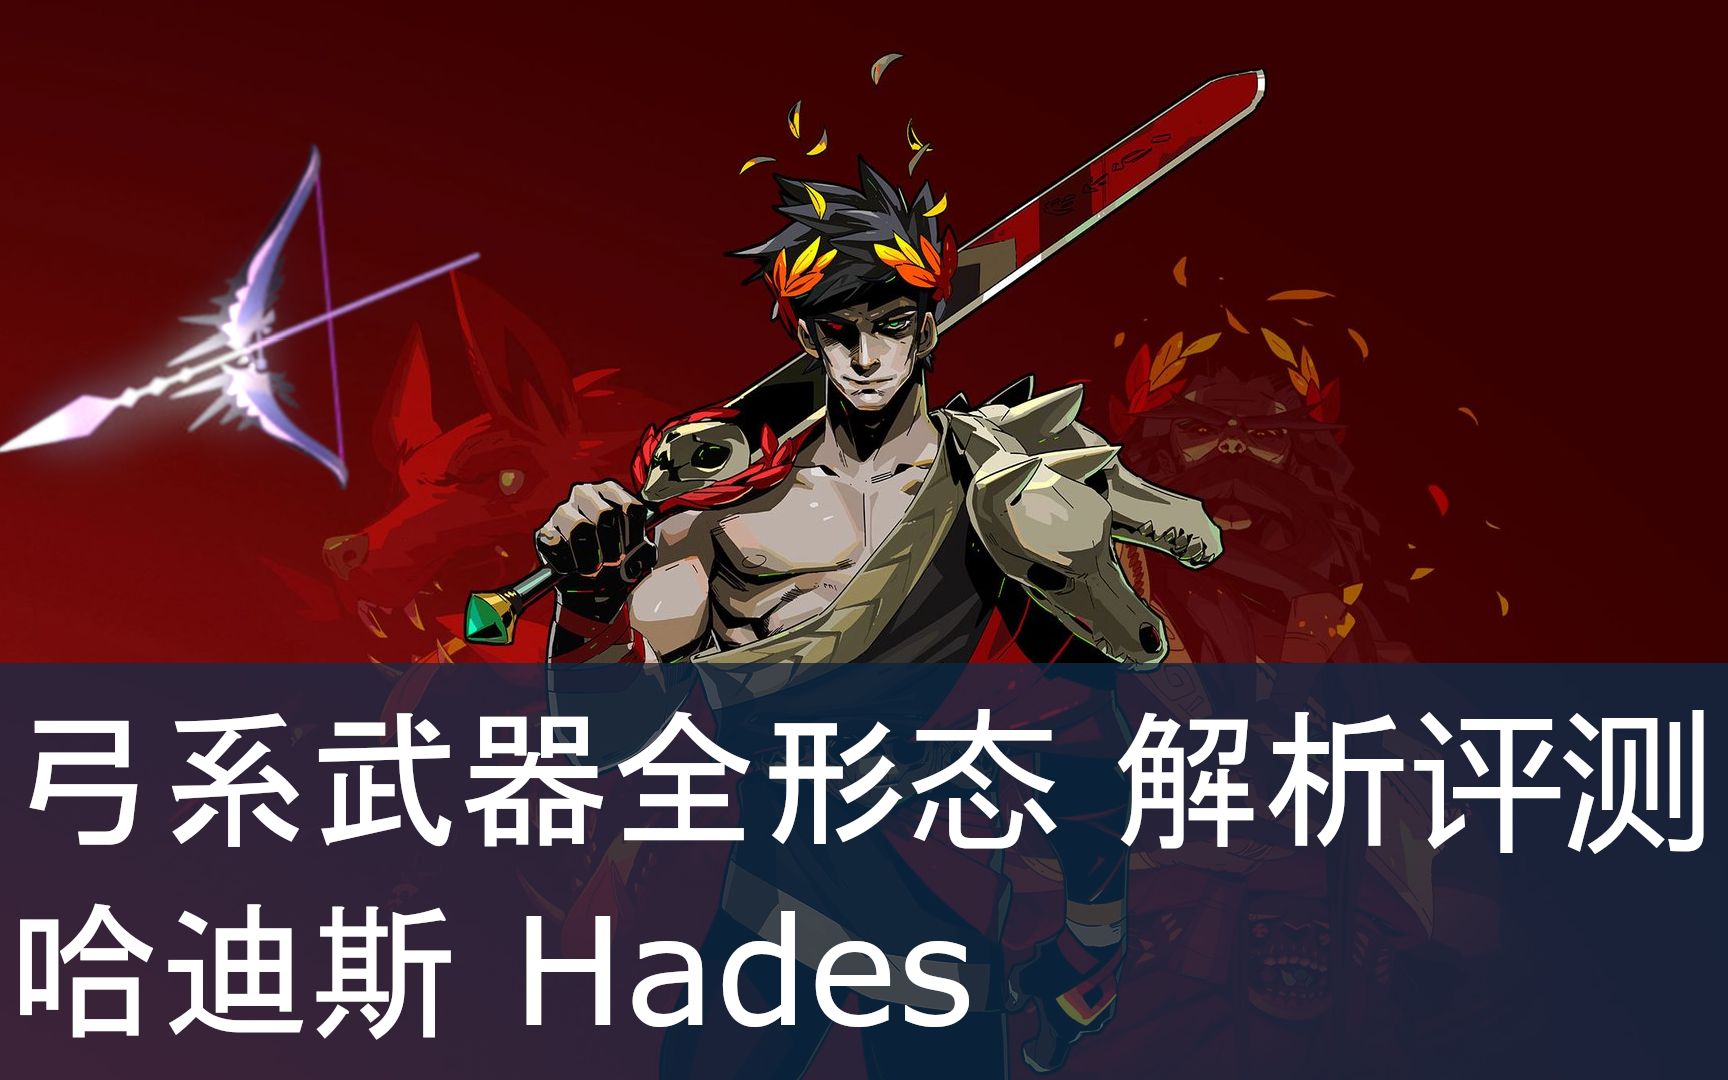 《哈迪斯hades》索心弓/弓系武器详细评测(普通/喀戎/赫拉形态)及实战